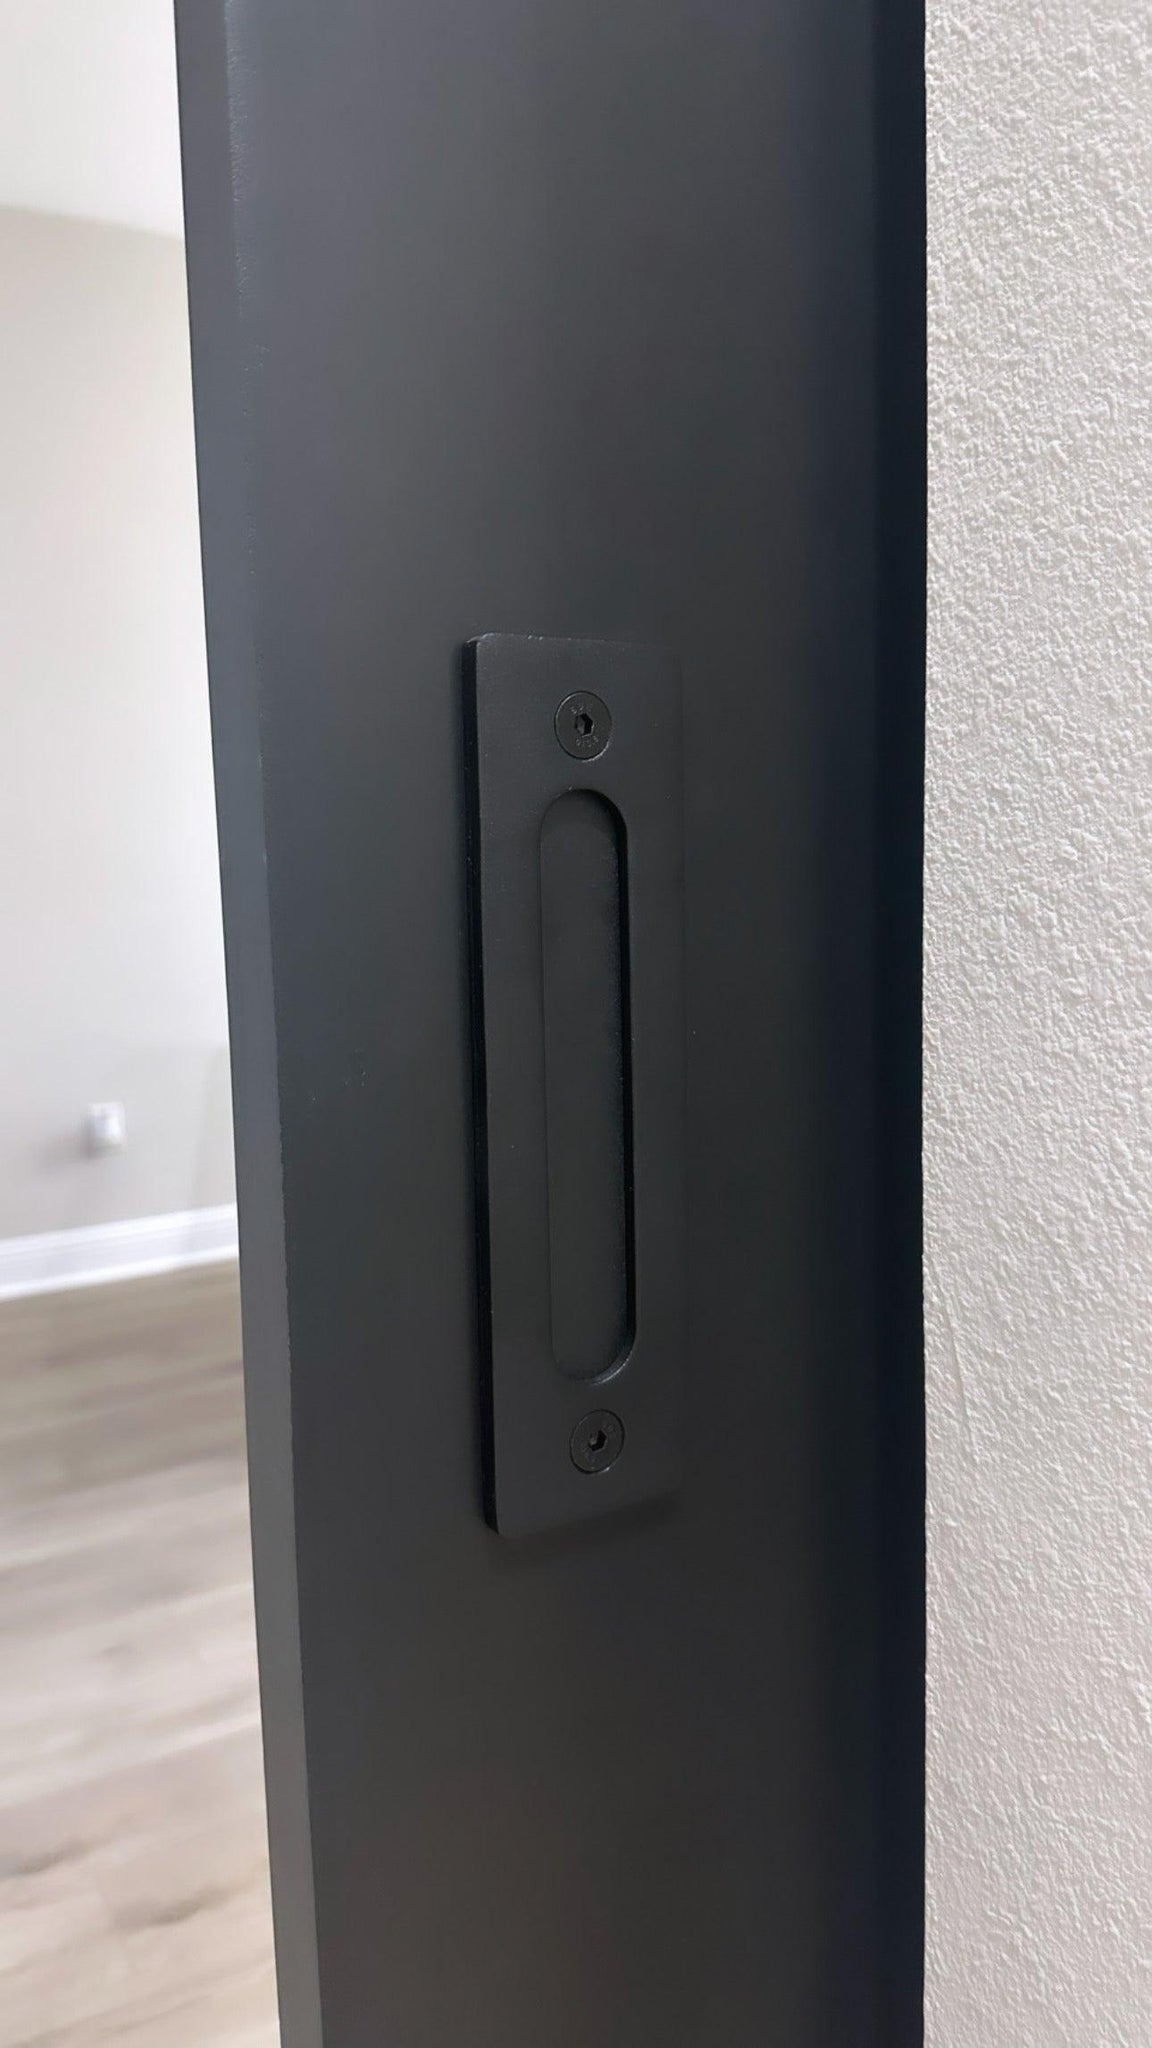 Flush Door Handle - Rustic Luxe Designs